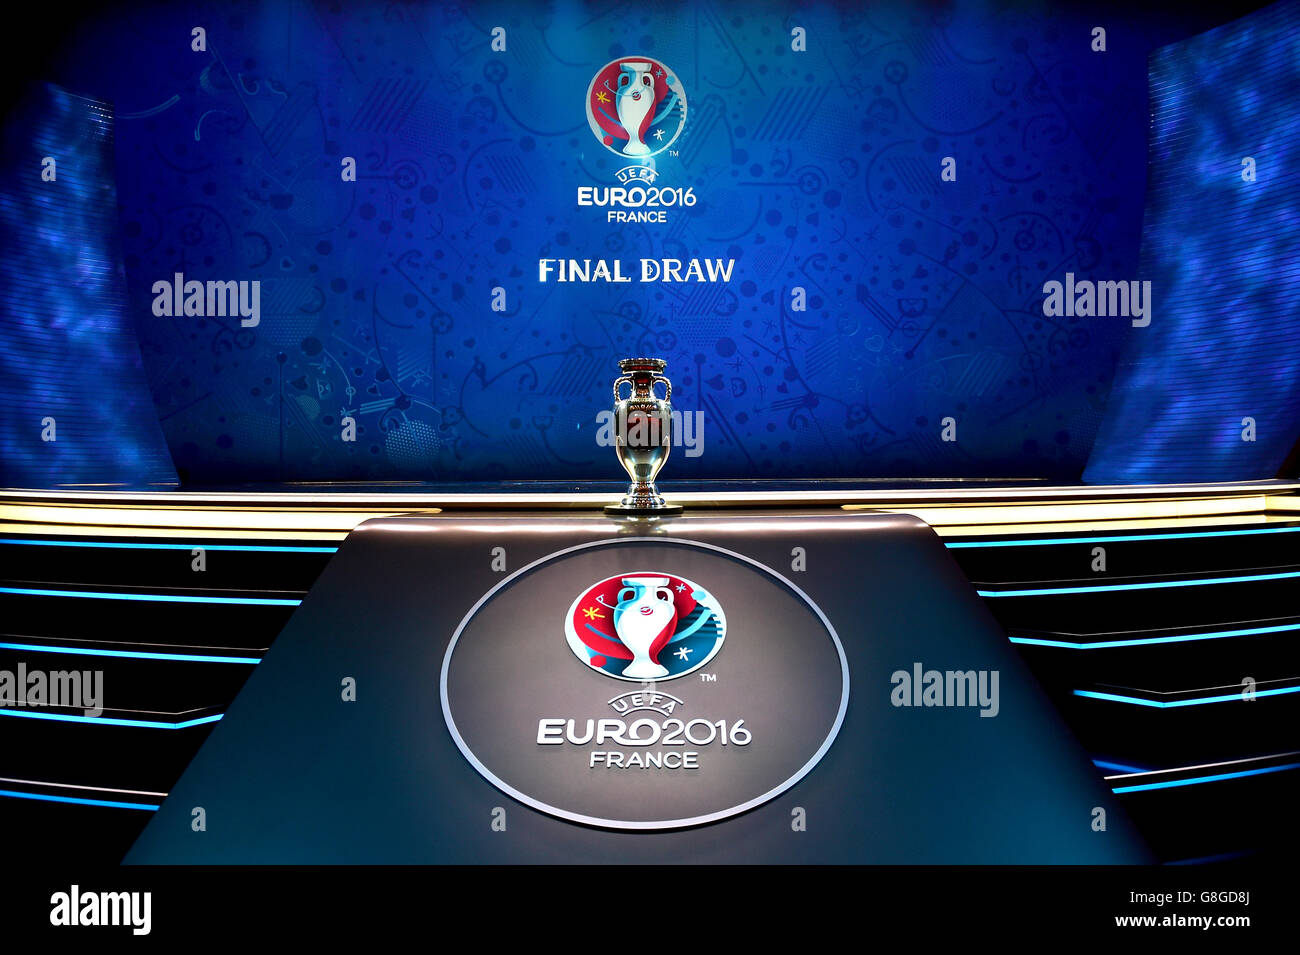 Una visión general del Trofeo del Campeonato Europeo en el escenario antes del sorteo de la UEFA euro 2016 en París, Francia. Foto de stock